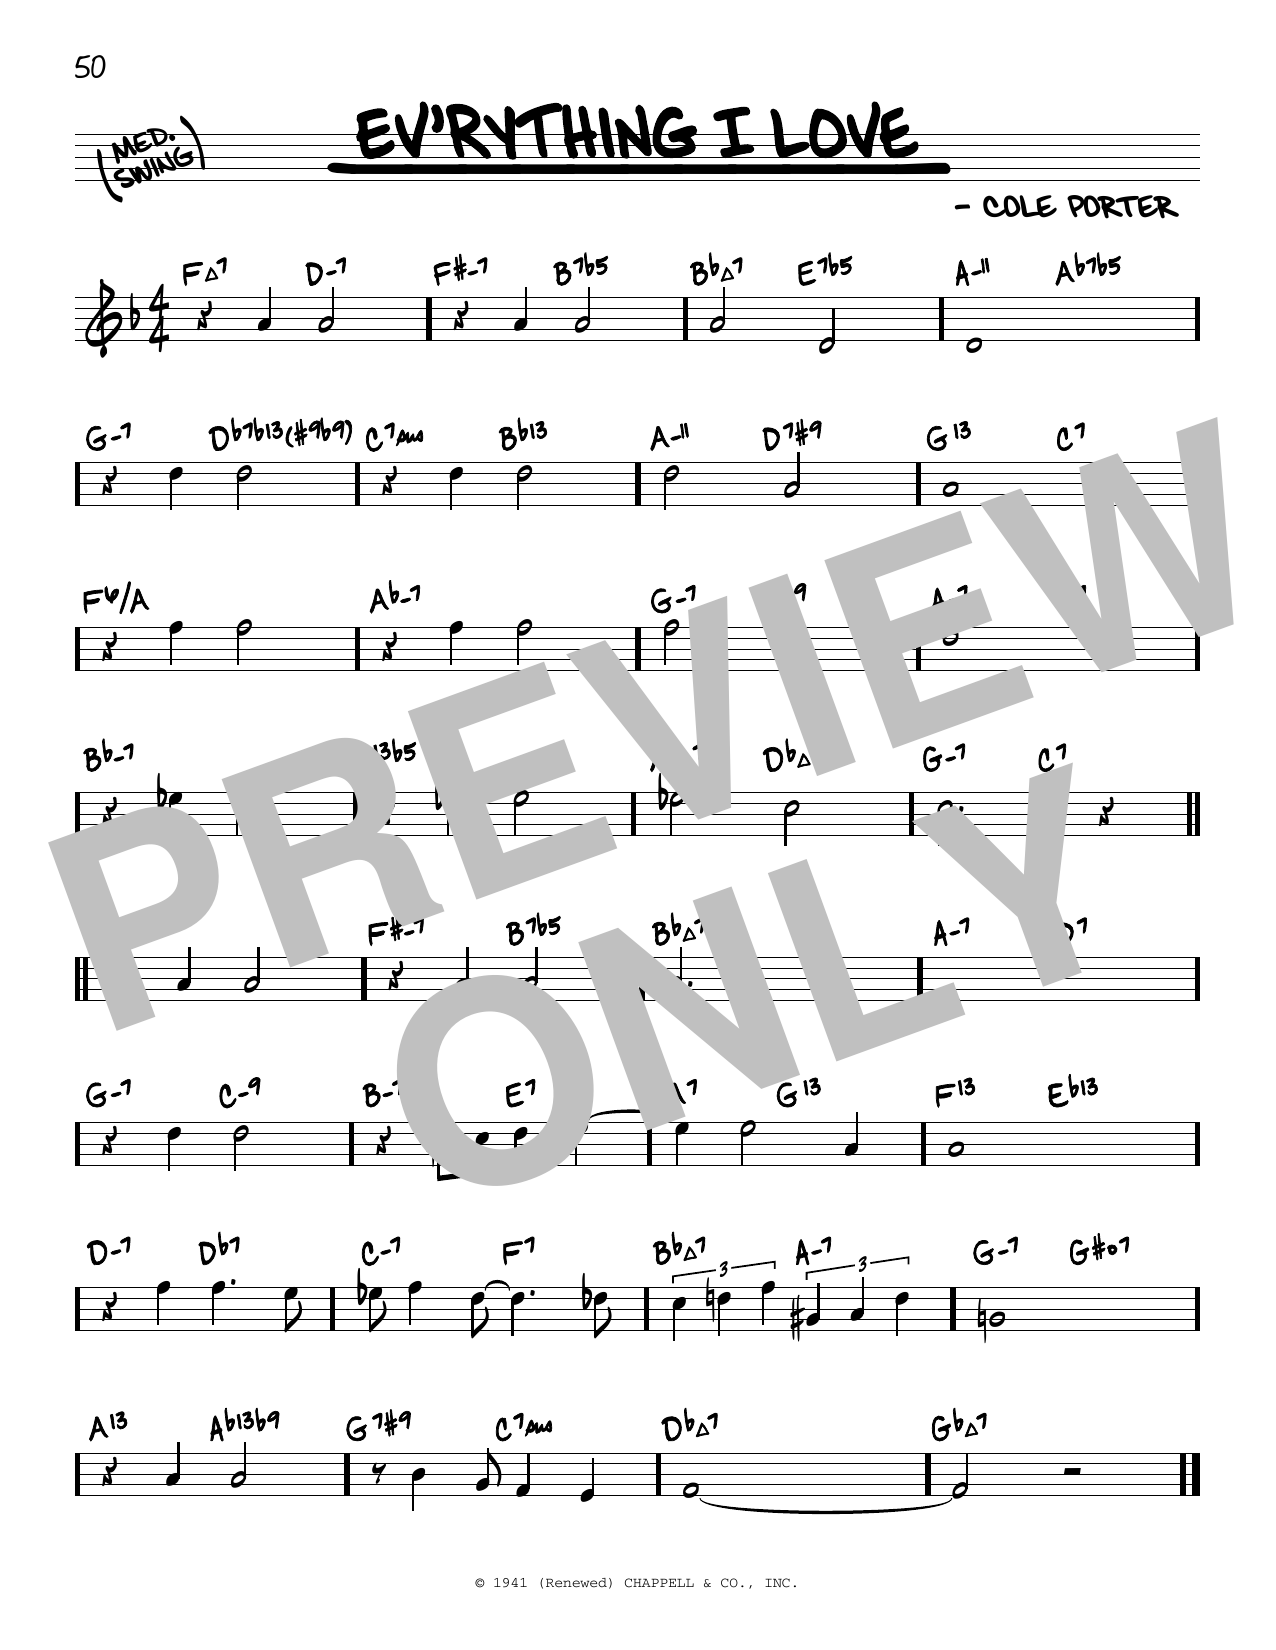 Download Cole Porter Ev'rything I Love (arr. David Hazeltine Sheet Music